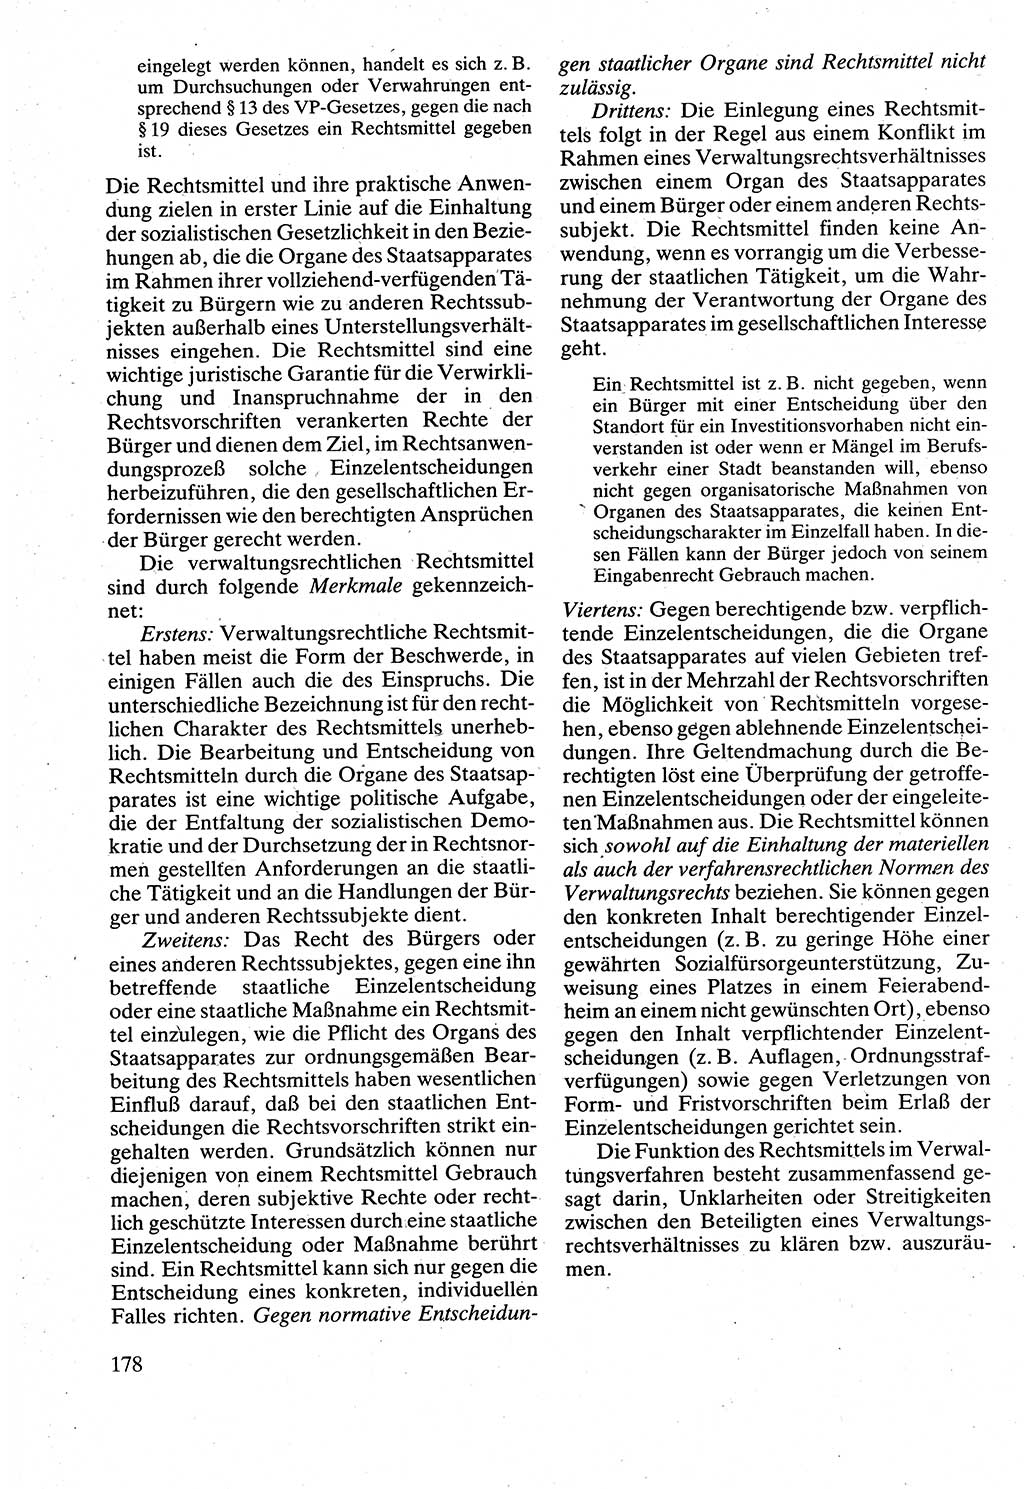 Verwaltungsrecht [Deutsche Demokratische Republik (DDR)], Lehrbuch 1988, Seite 178 (Verw.-R. DDR Lb. 1988, S. 178)